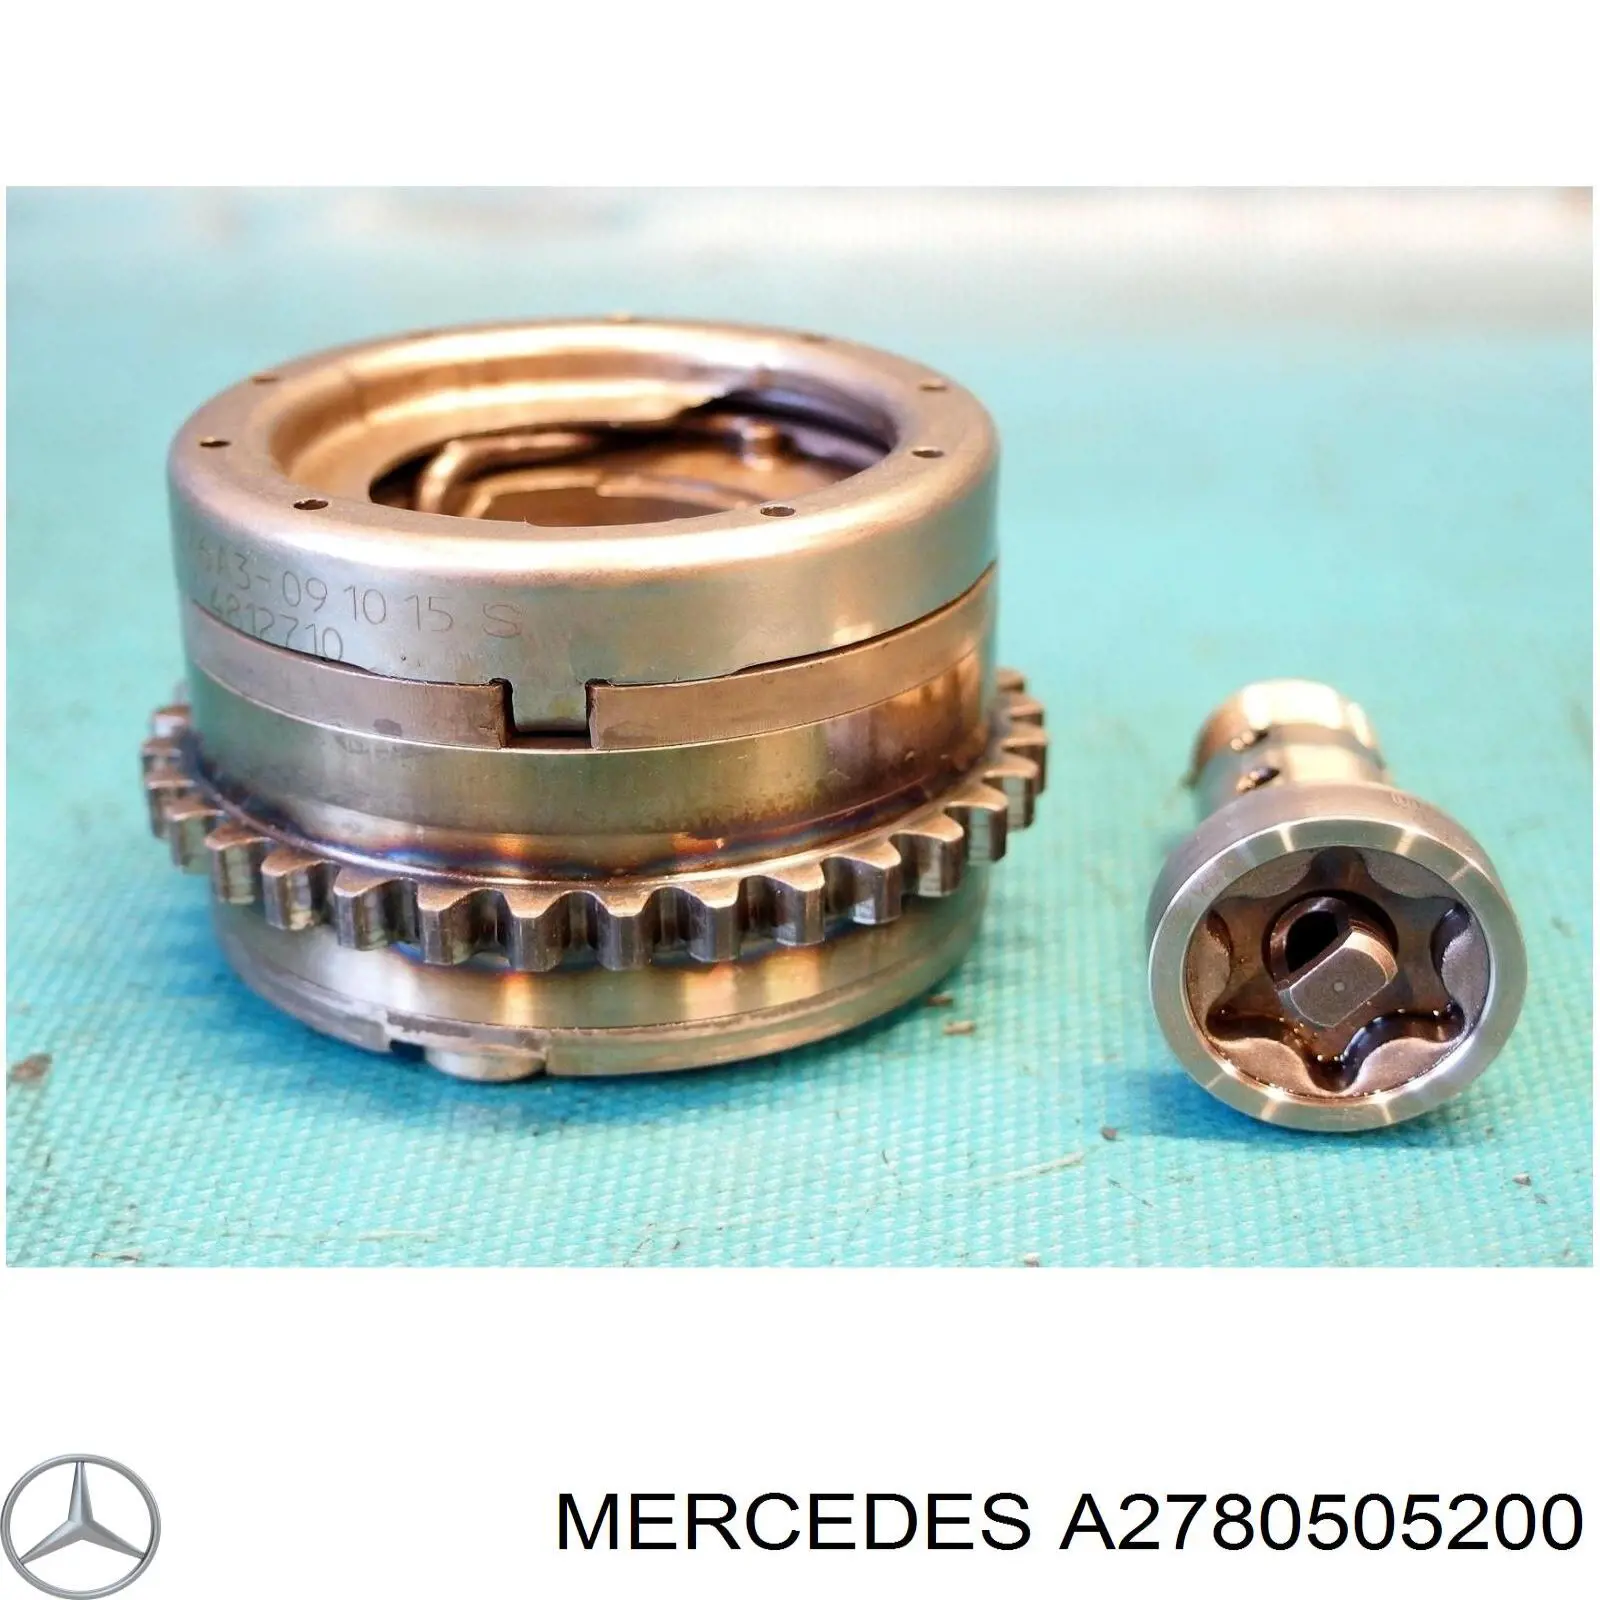 A2780501747 Mercedes звездочка-шестерня распредвала двигателя, выпускного левого